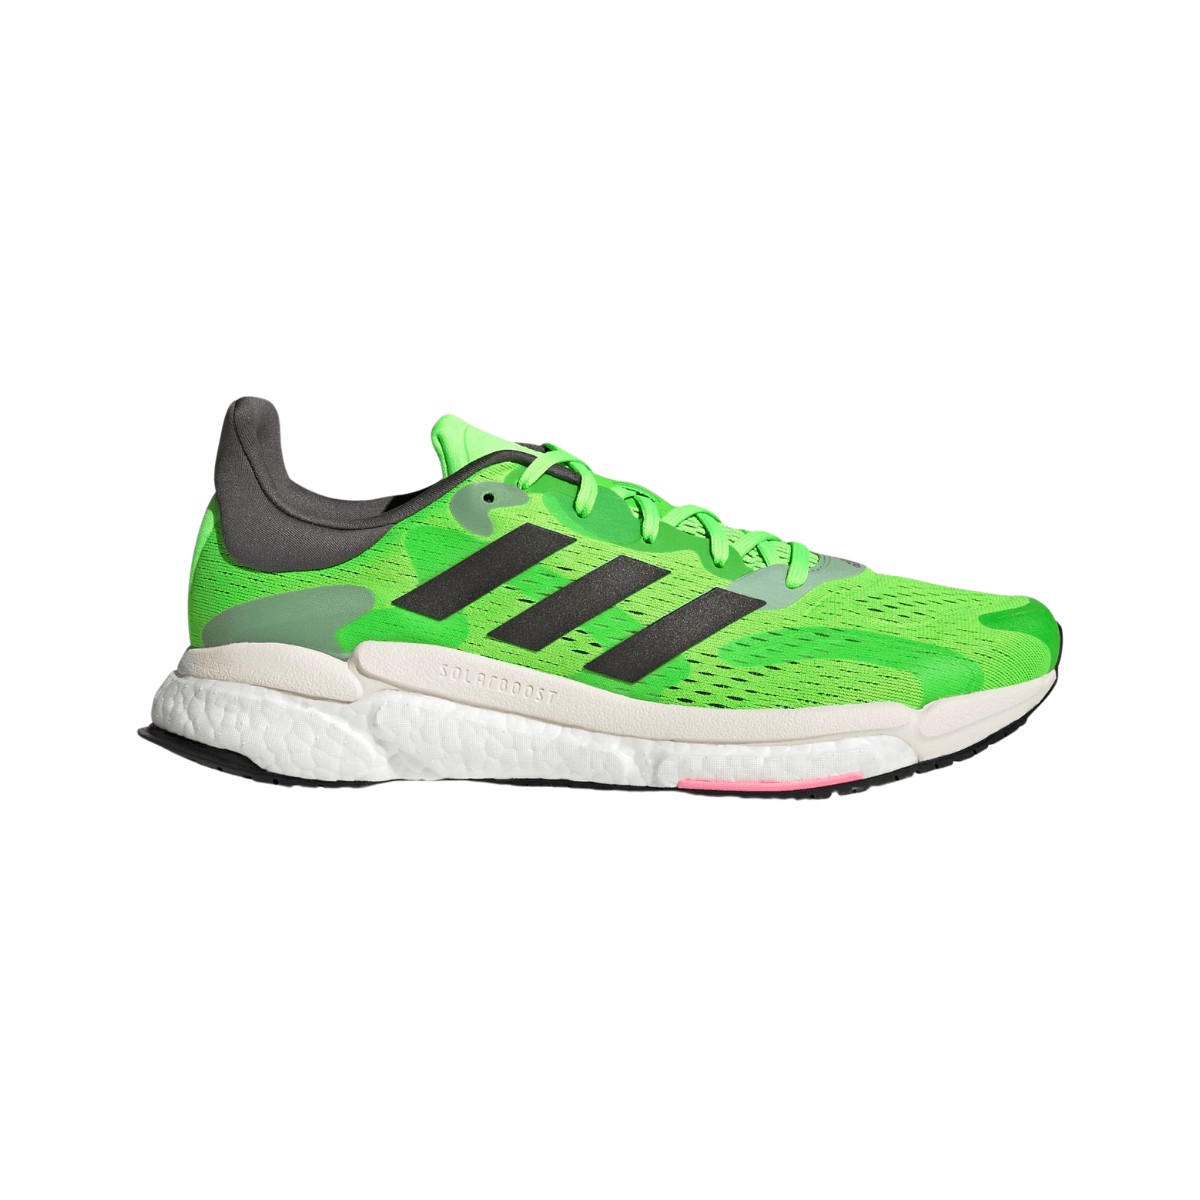 Zapatillas Adidas Solar Boost 4 Verde Gris AW22, Talla UK 11.5